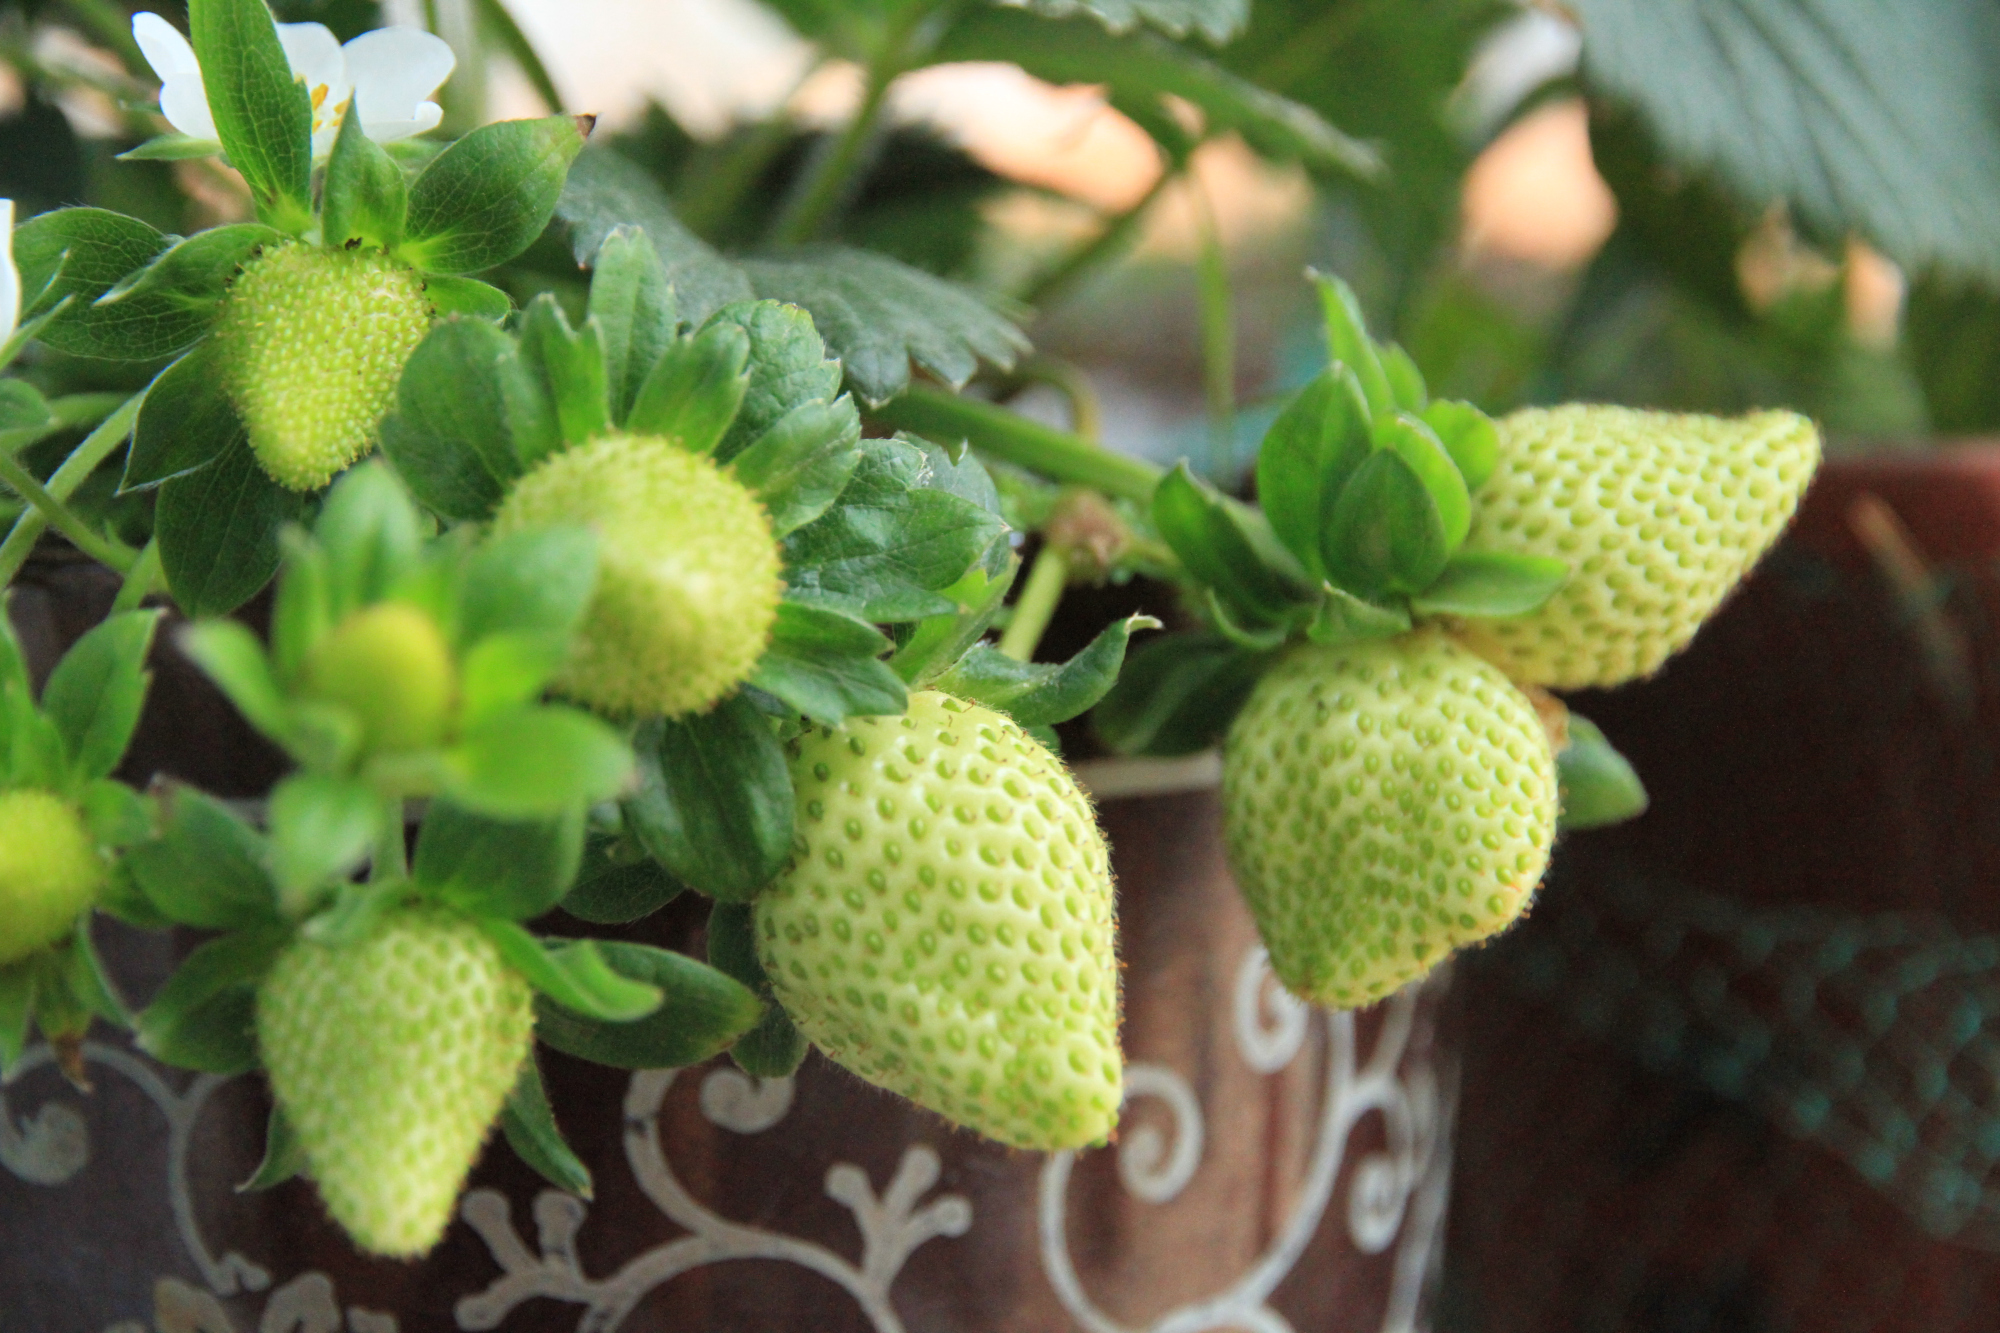 盆栽草莓收获季节,享受自己种植的美味水果!